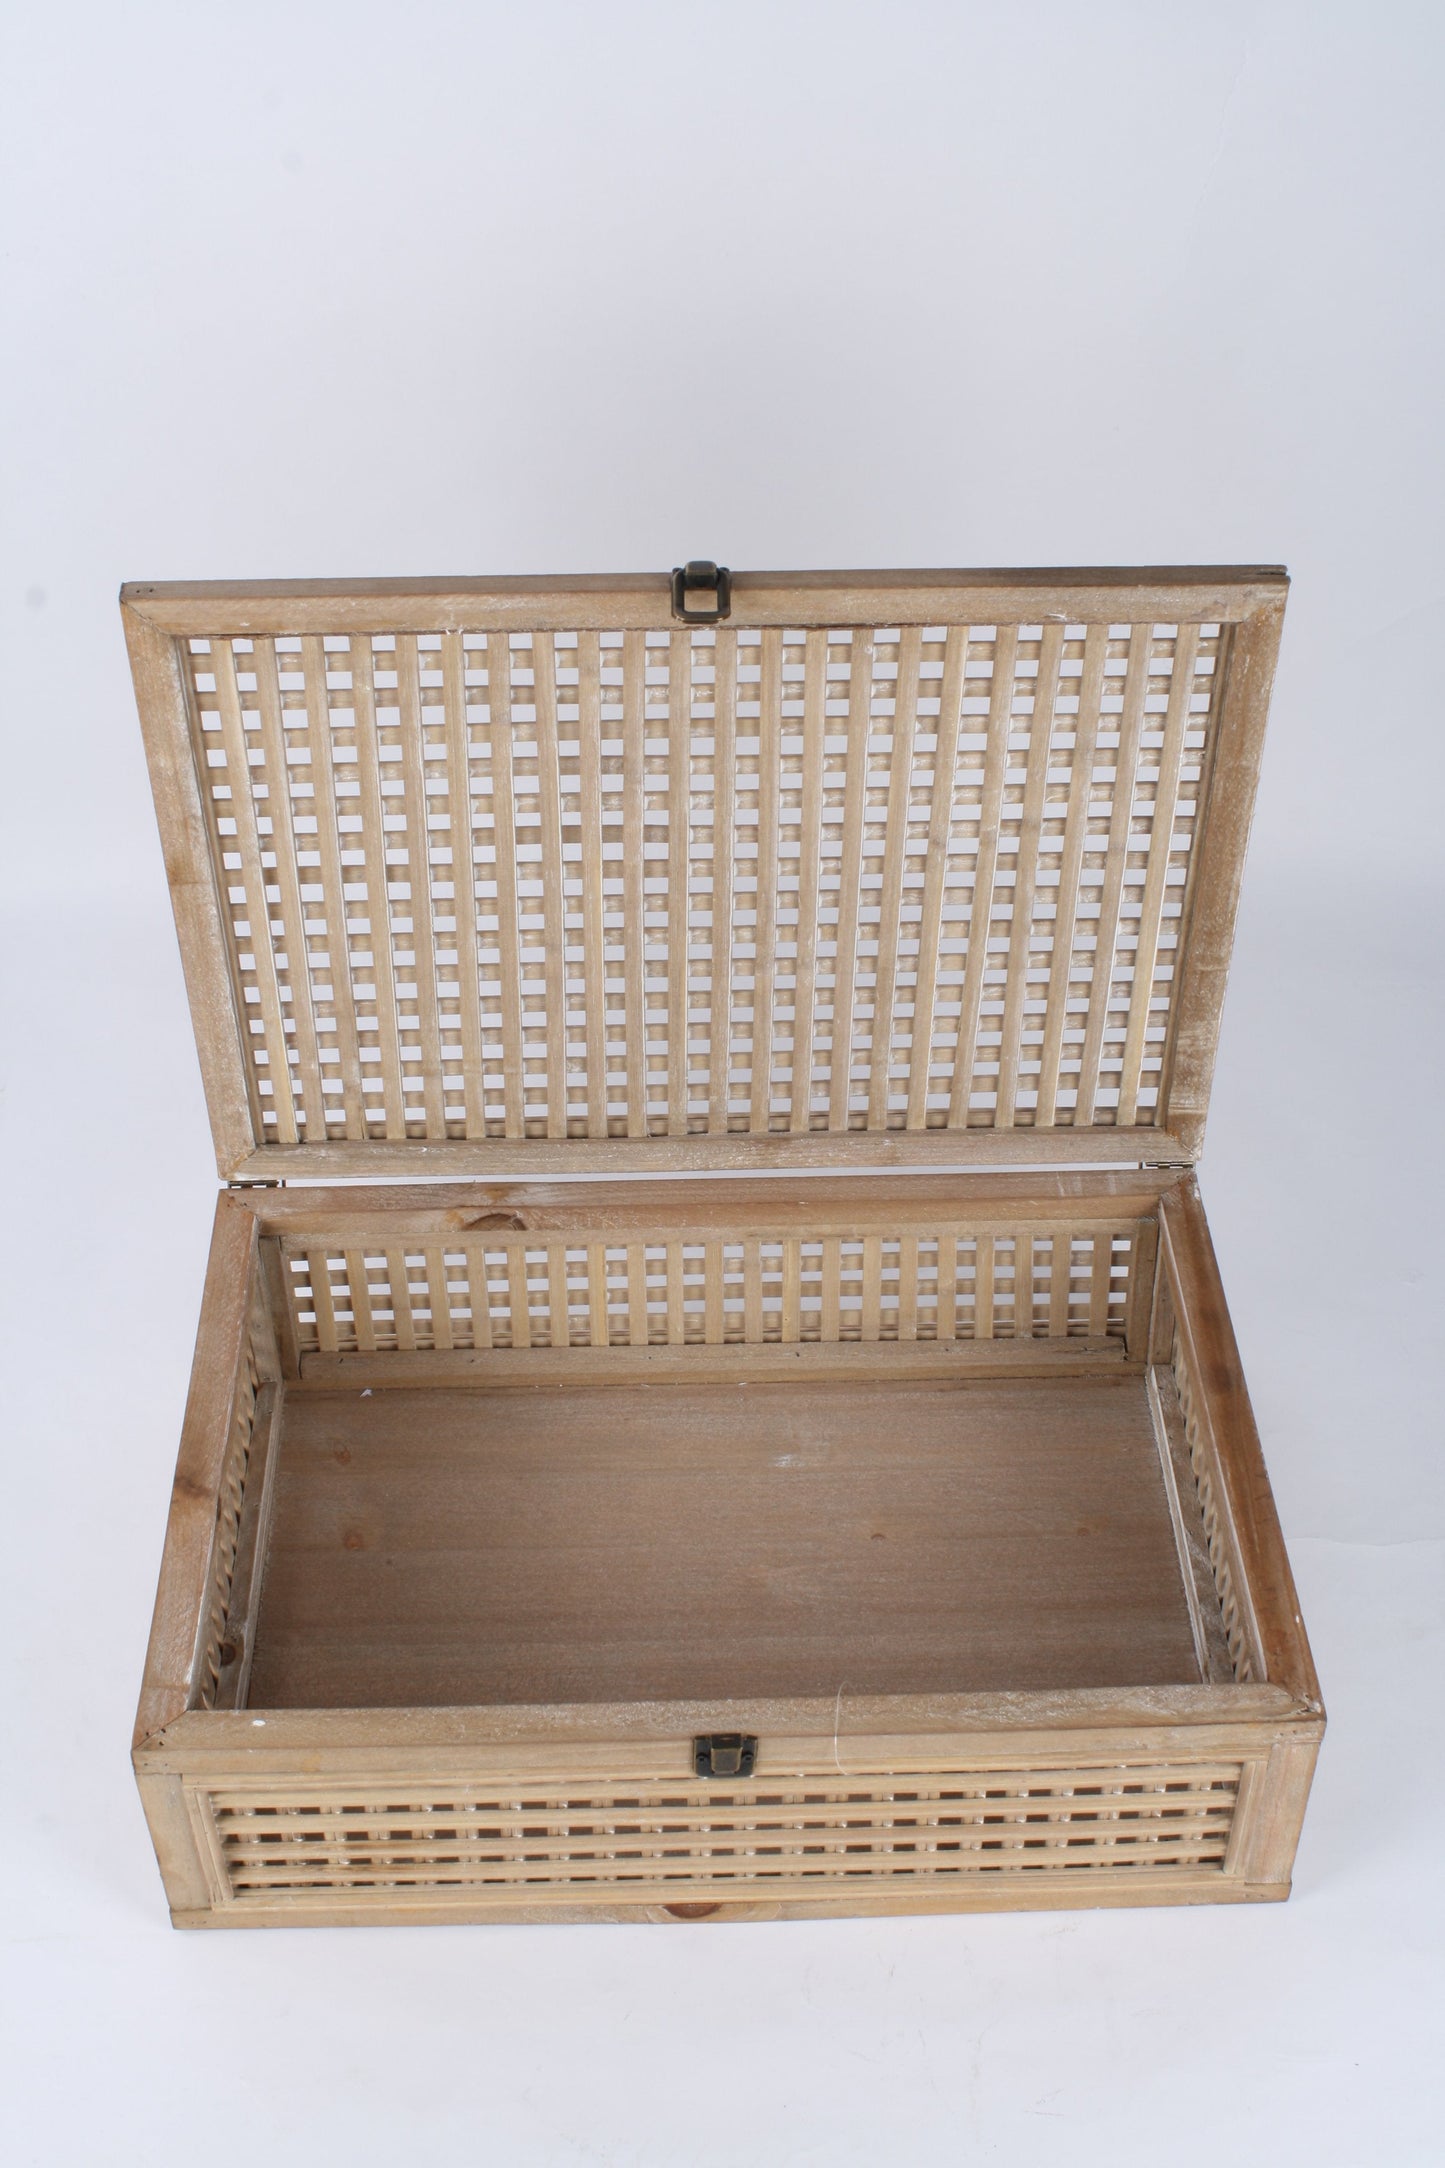 Wooden Beige Box